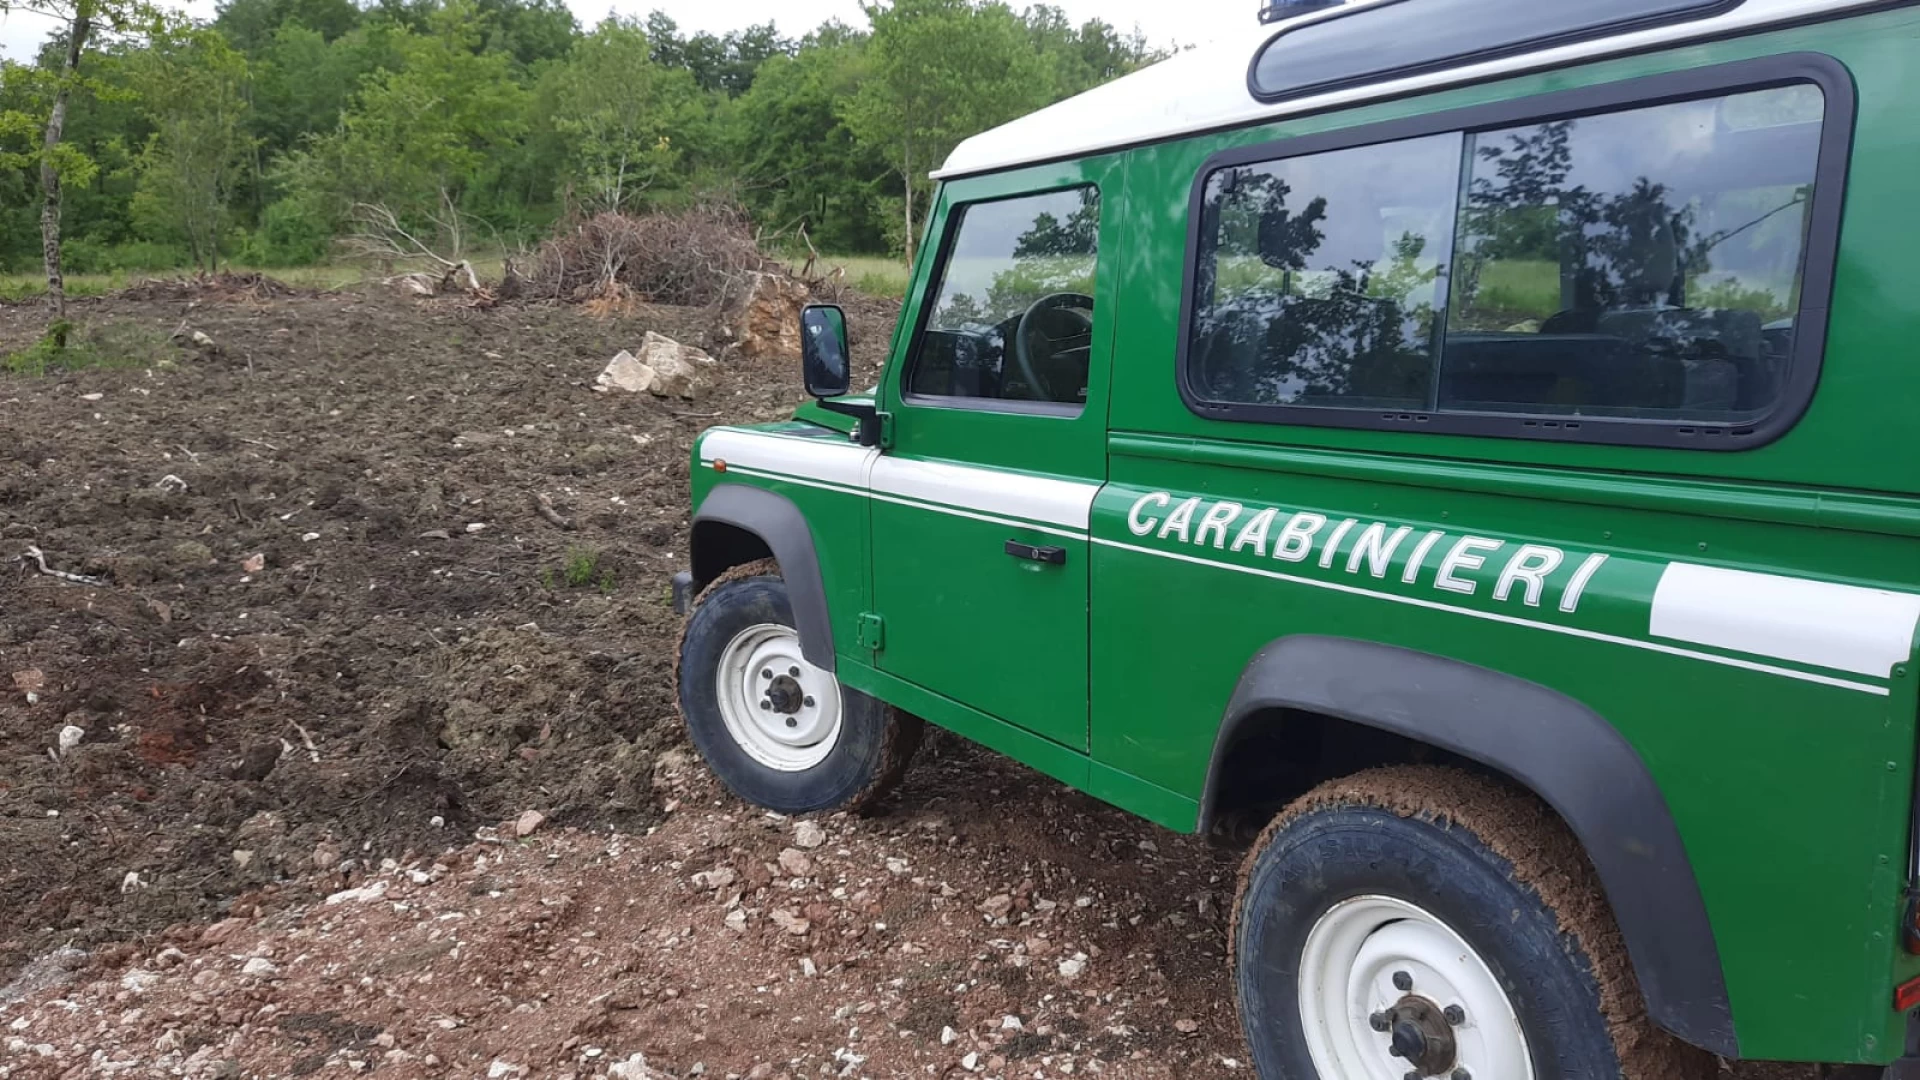 Carovilli: abusivismo edilizio in area protetta, i Carabinieri Forestali denunciano imprenditore agricolo.